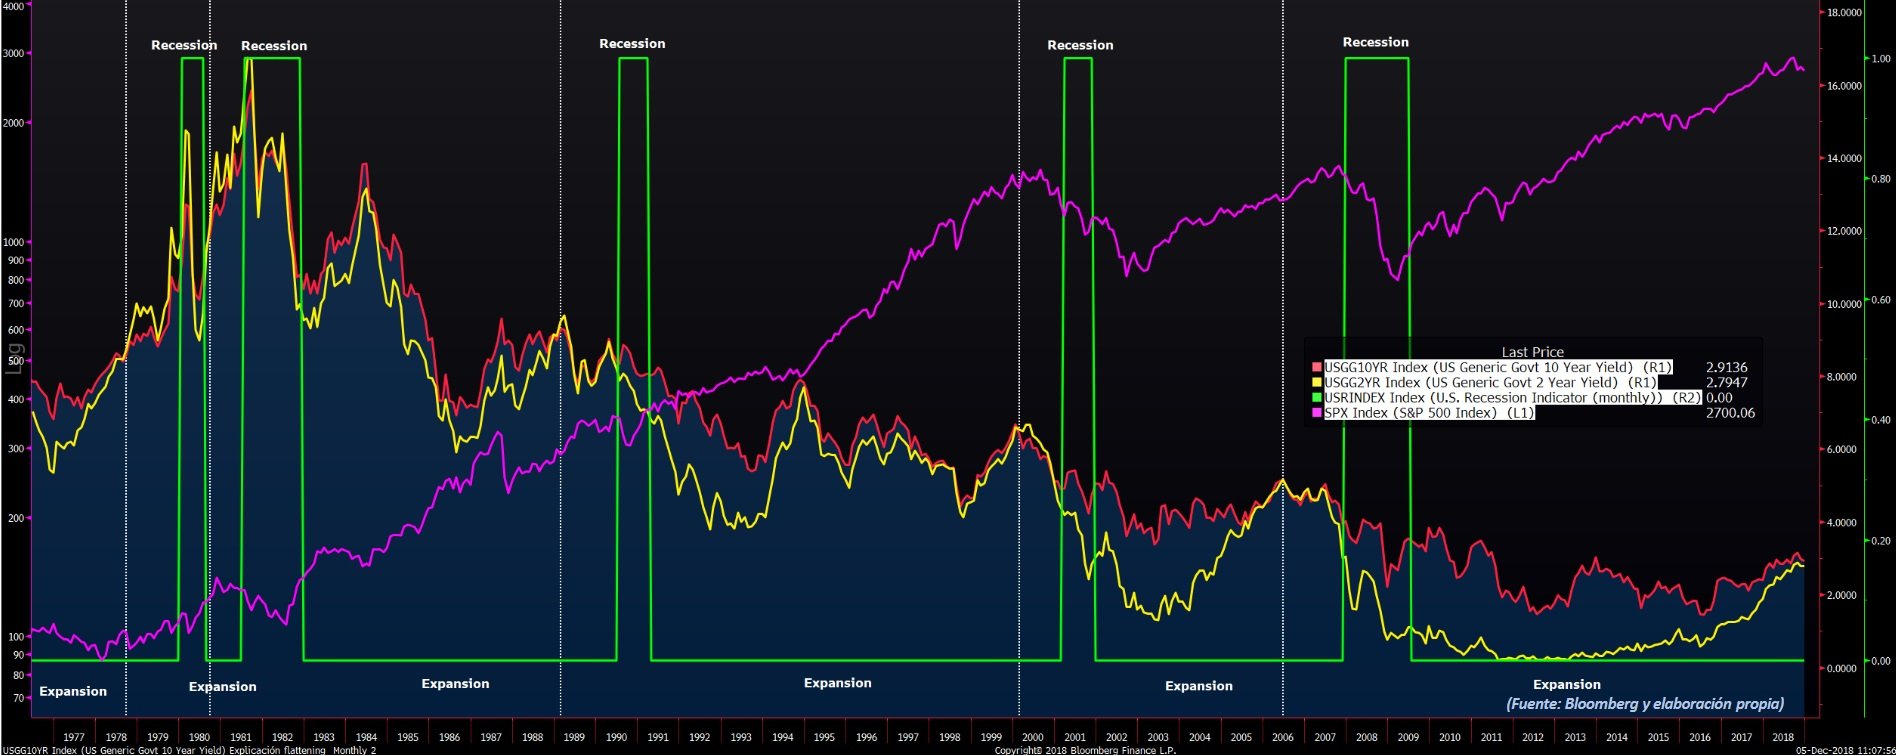 Gráfico de la curva de tipos en EEUU, anteriores recesiones y S&P 500